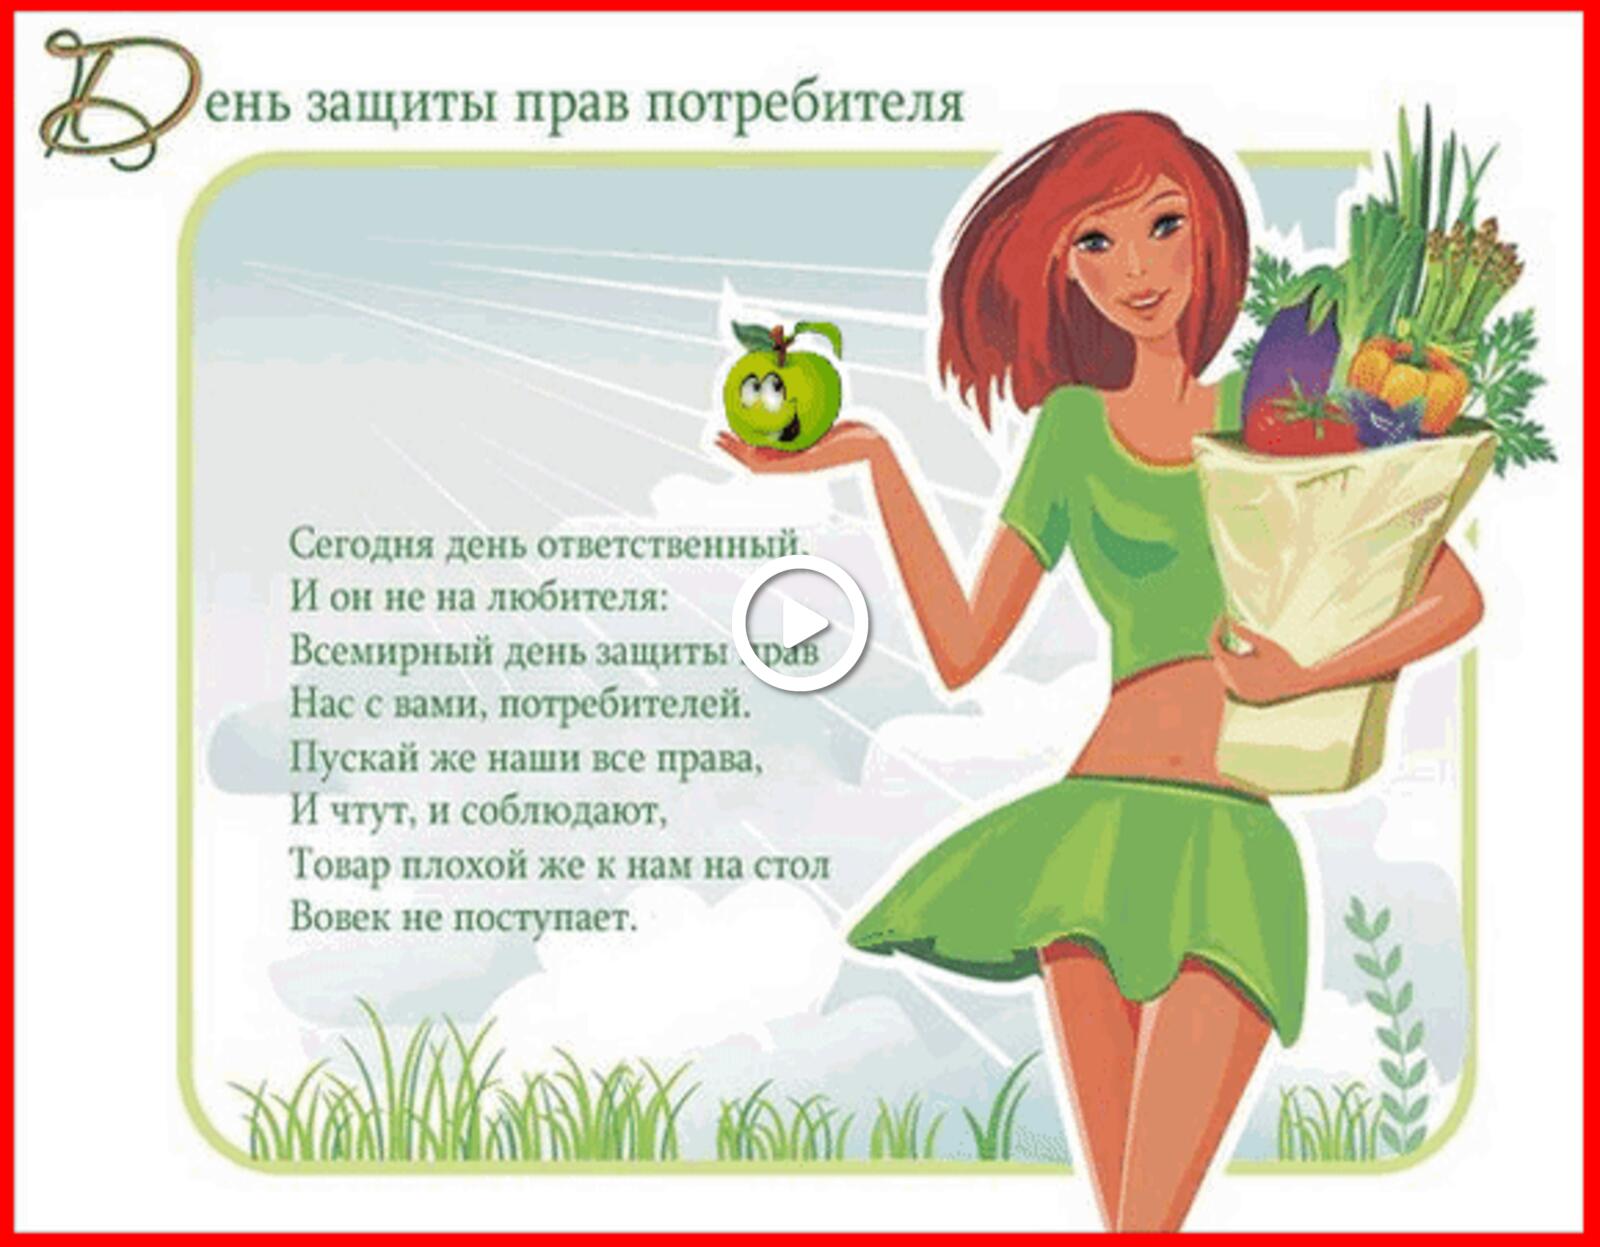 一张以消费者保护日 节日 女孩为主题的明信片